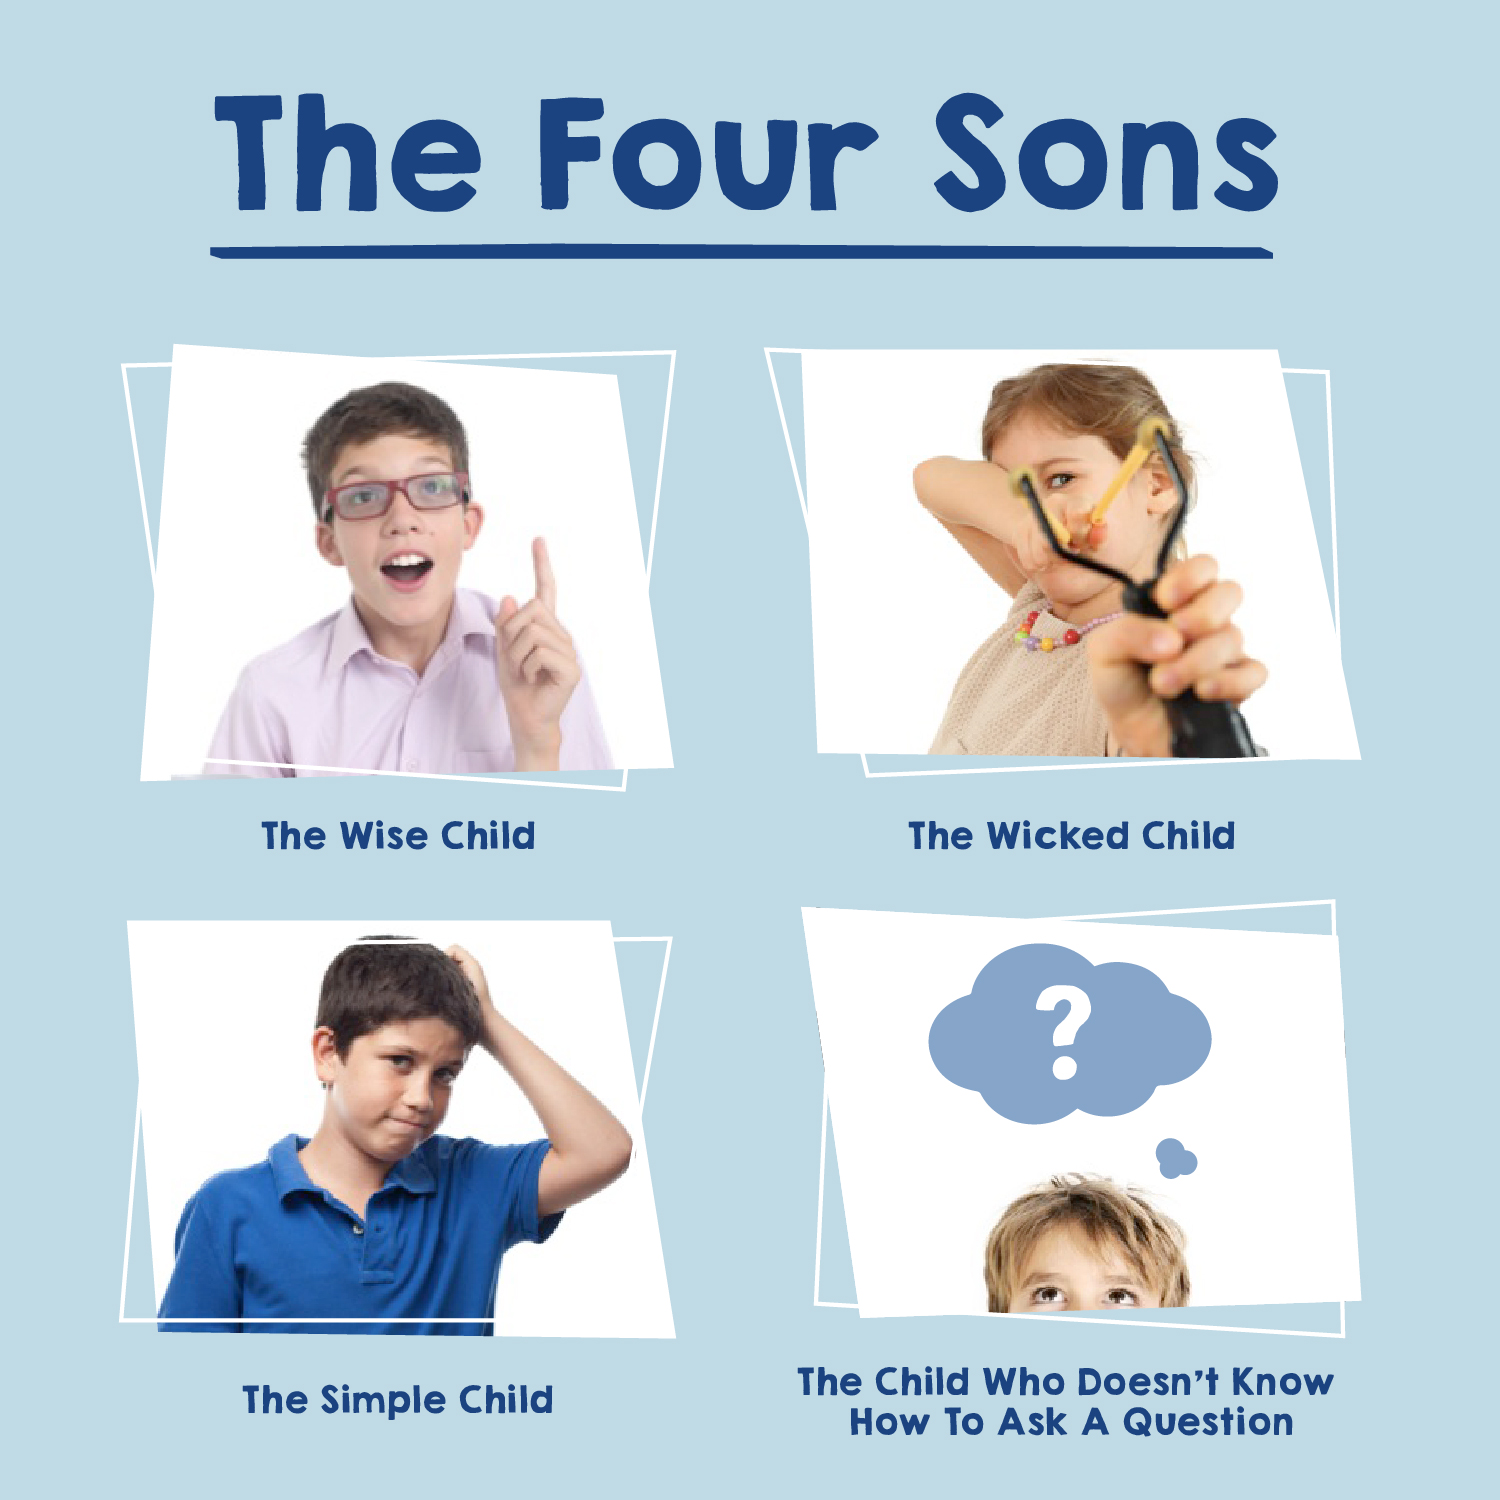 Four Children